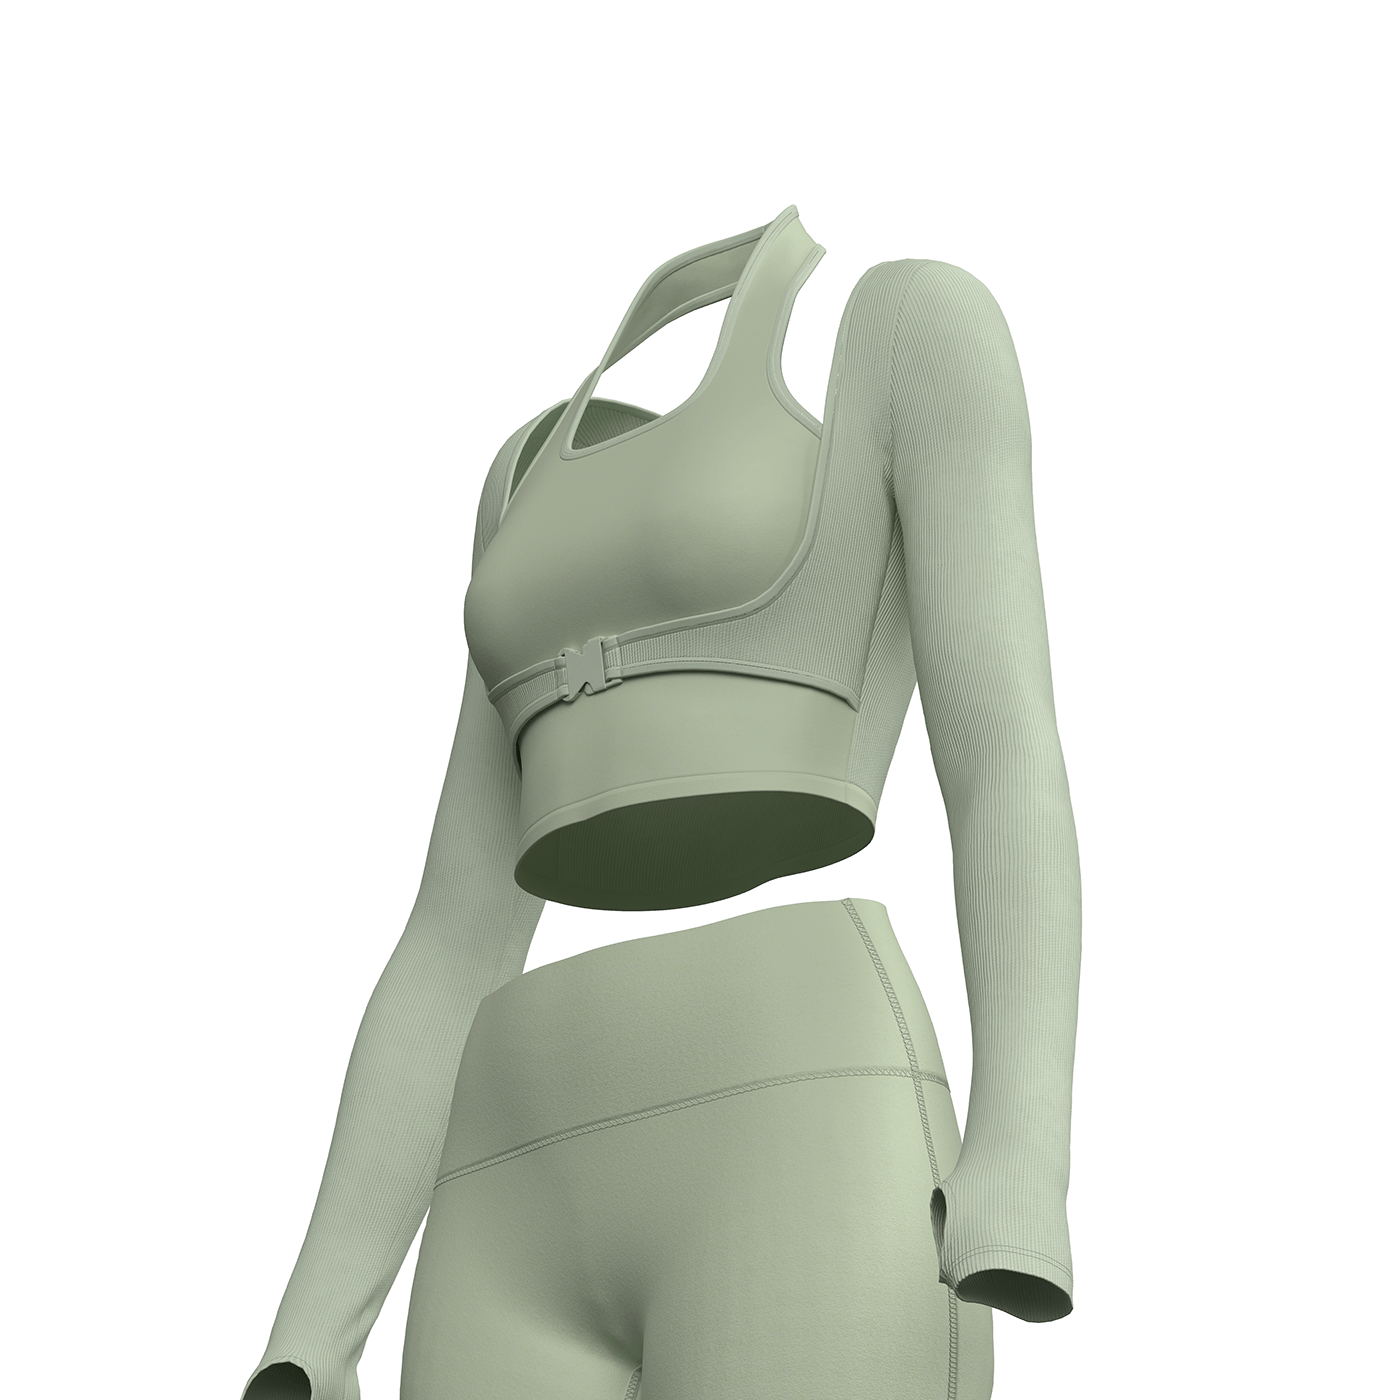 3D Mockup Fashion  virtual fashion Clo3d marvelous designer Clothing apparel tshirt dress